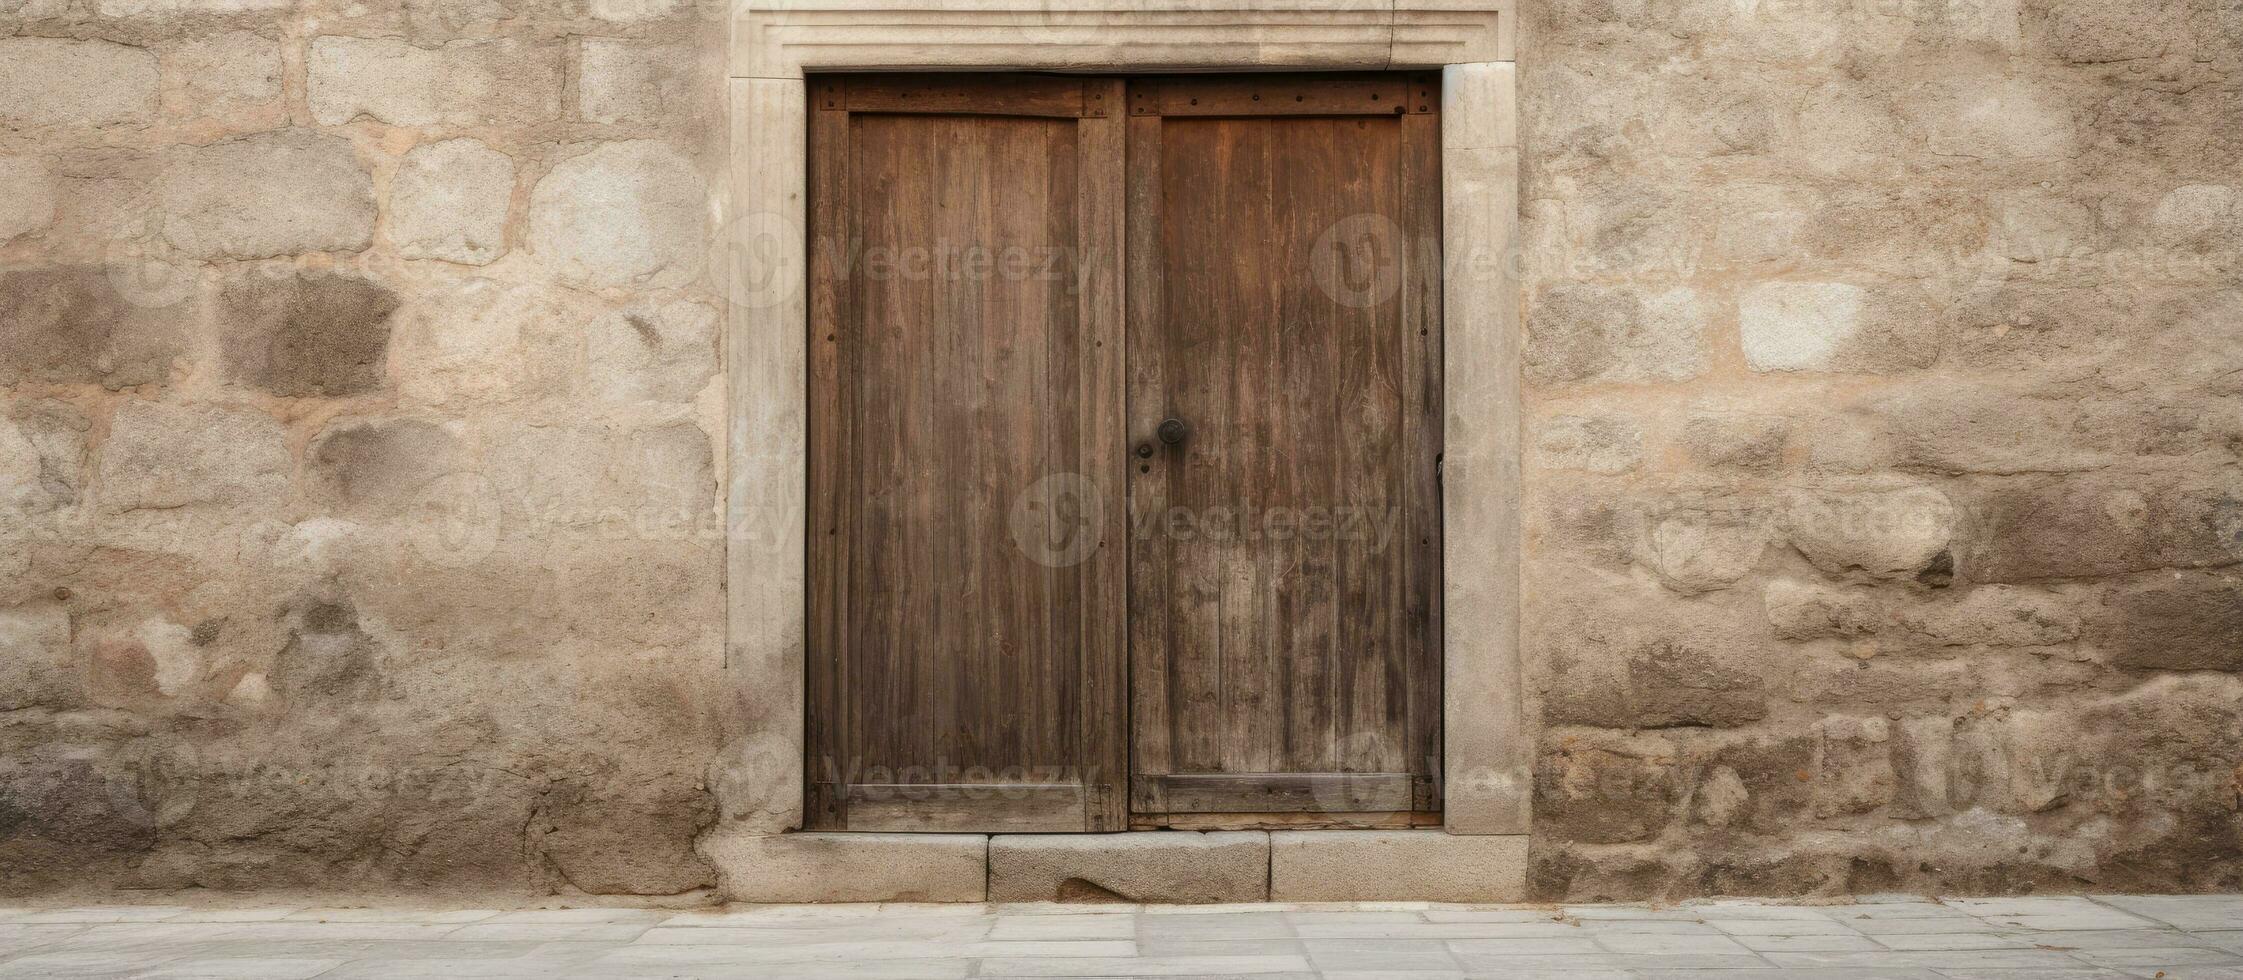 antiek deur gemaakt van bruin hout foto